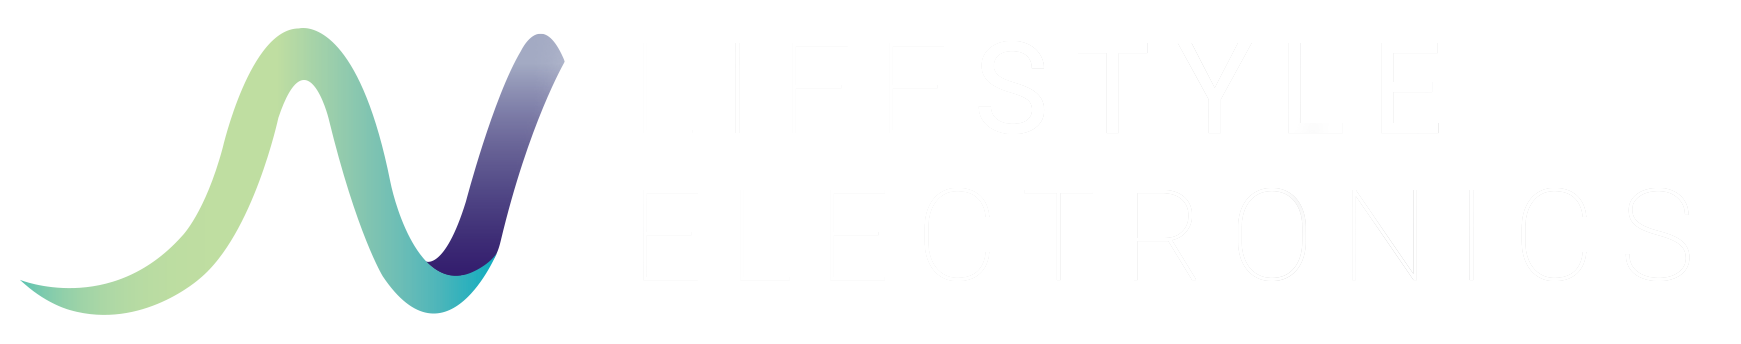 Lifestyle Electronics